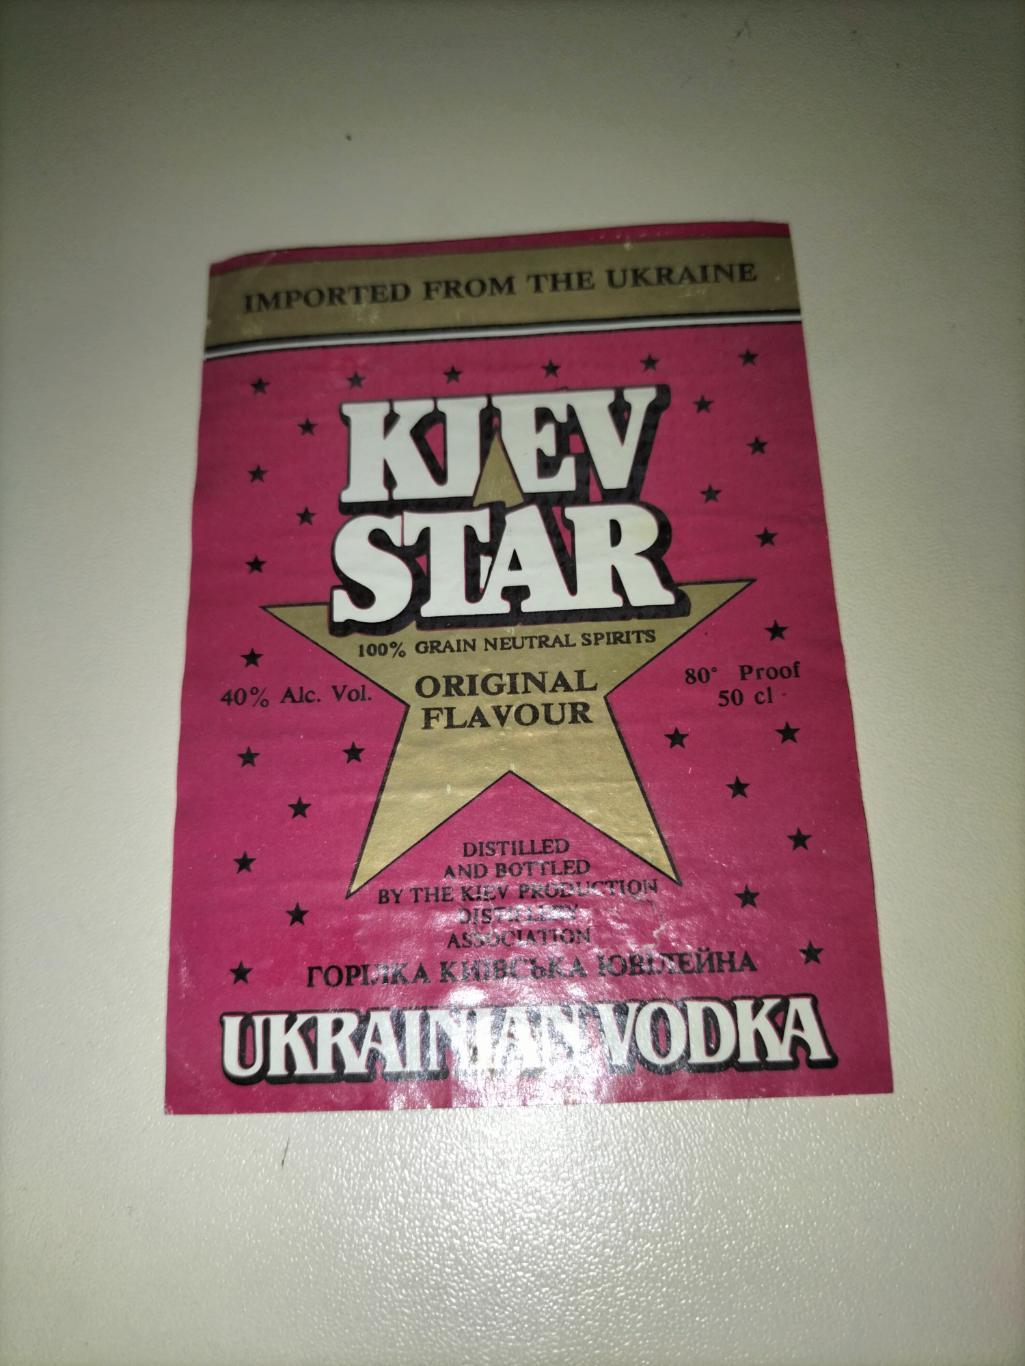 Kiev Star (Ukrainian vodka)